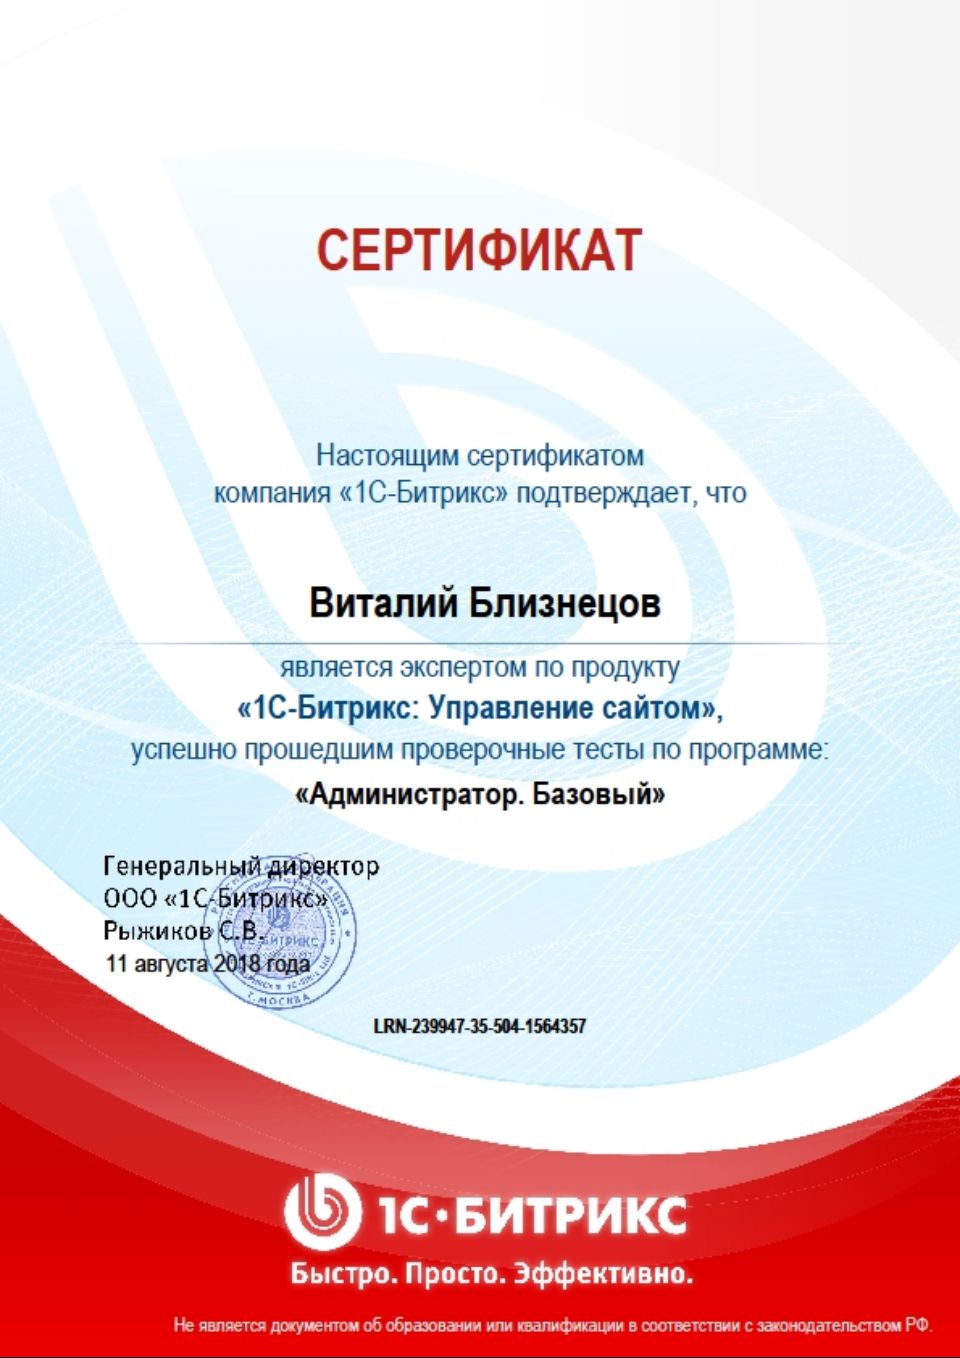 Сертификат Битрикс-Администратор базовый 